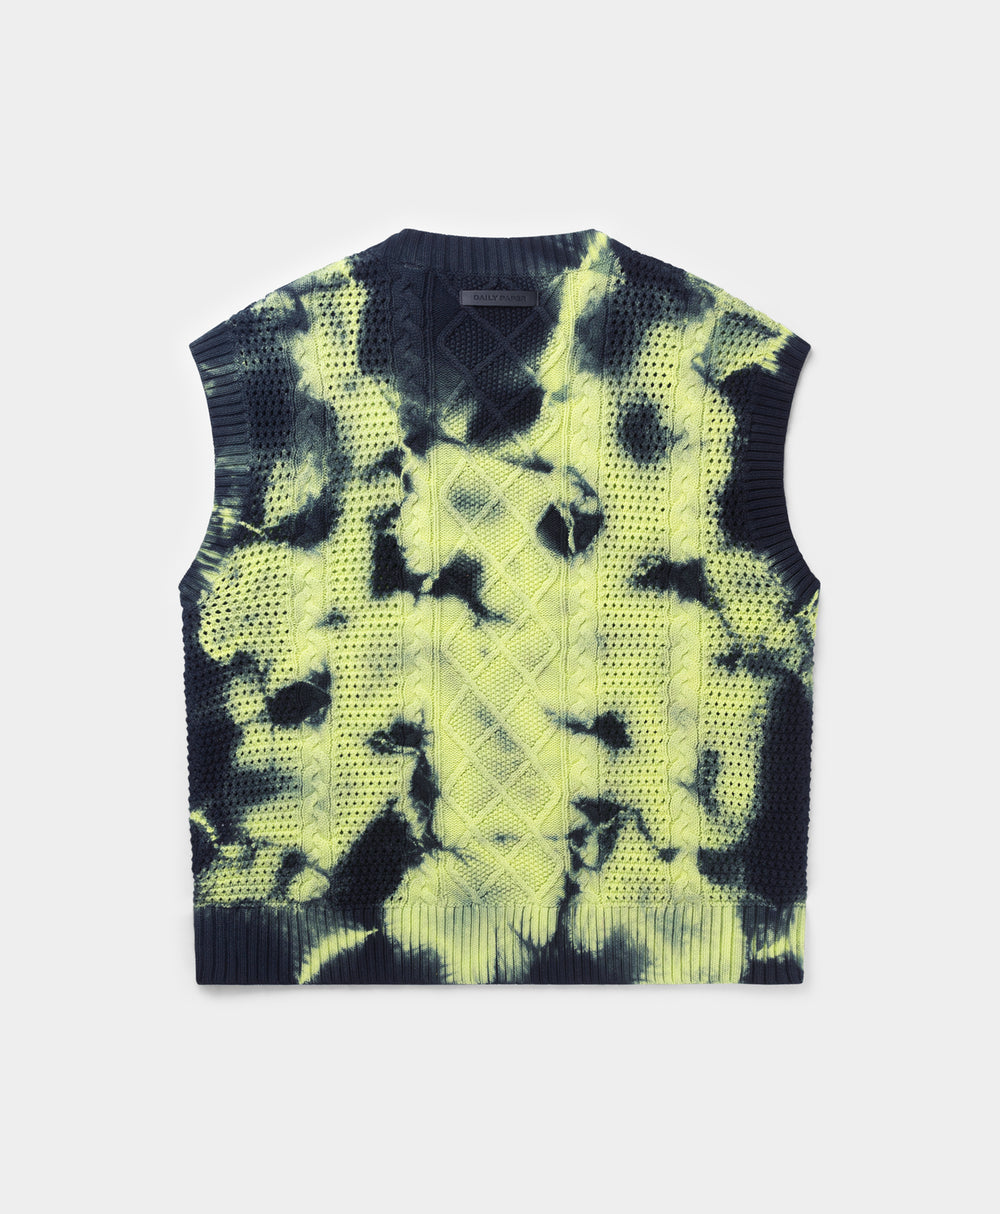 DP - Daiquiri Green Xois Crochet Vest - Packshot - Rear